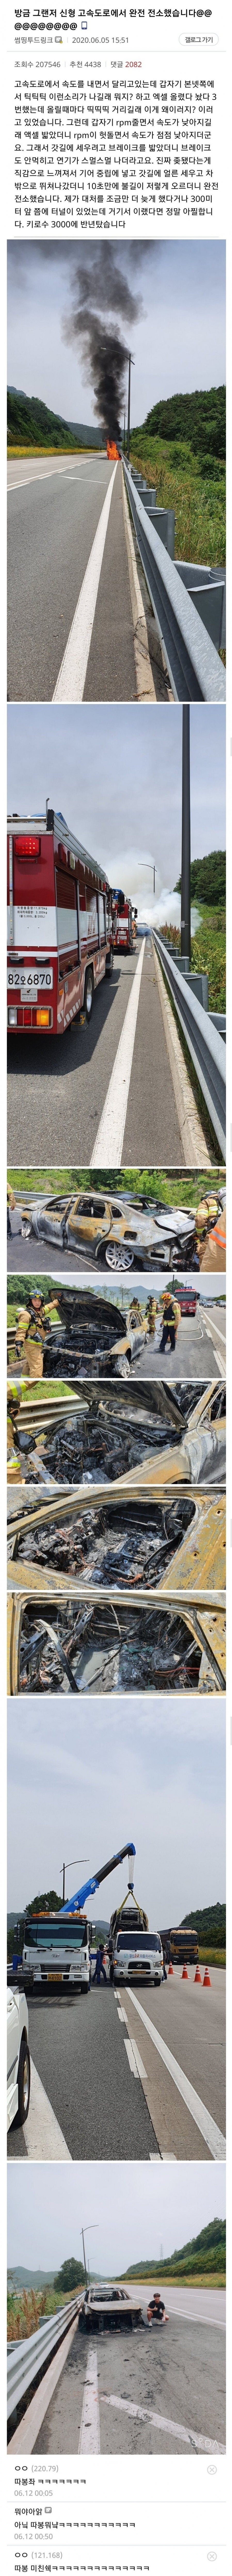 nokbeon.net-고속도로에서 차에 불이 났었던-1번 이미지